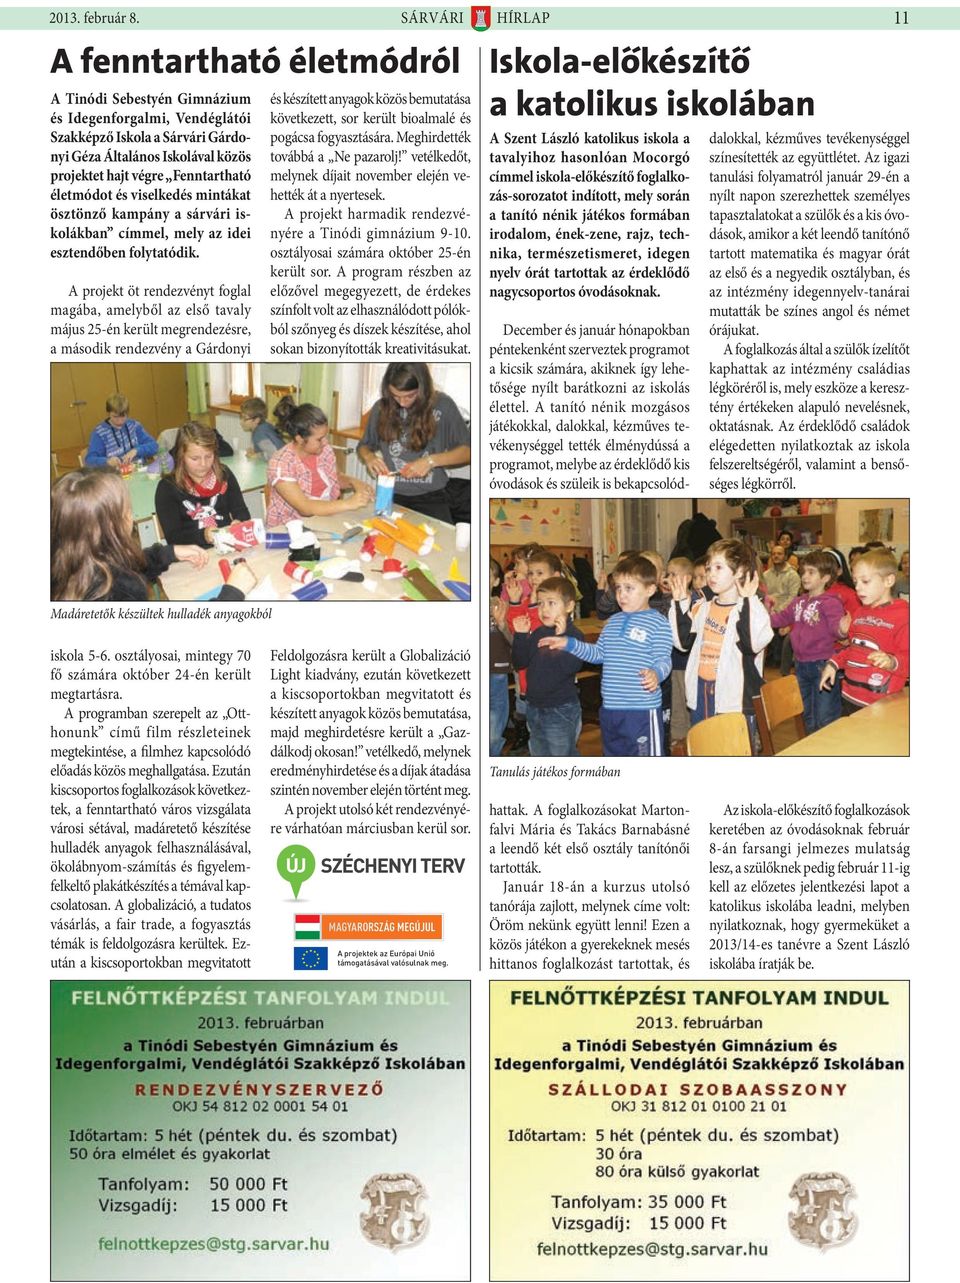 Fenntartható életmódot és viselkedés mintákat ösztönző kampány a sárvári iskolákban címmel, mely az idei esztendőben folytatódik.